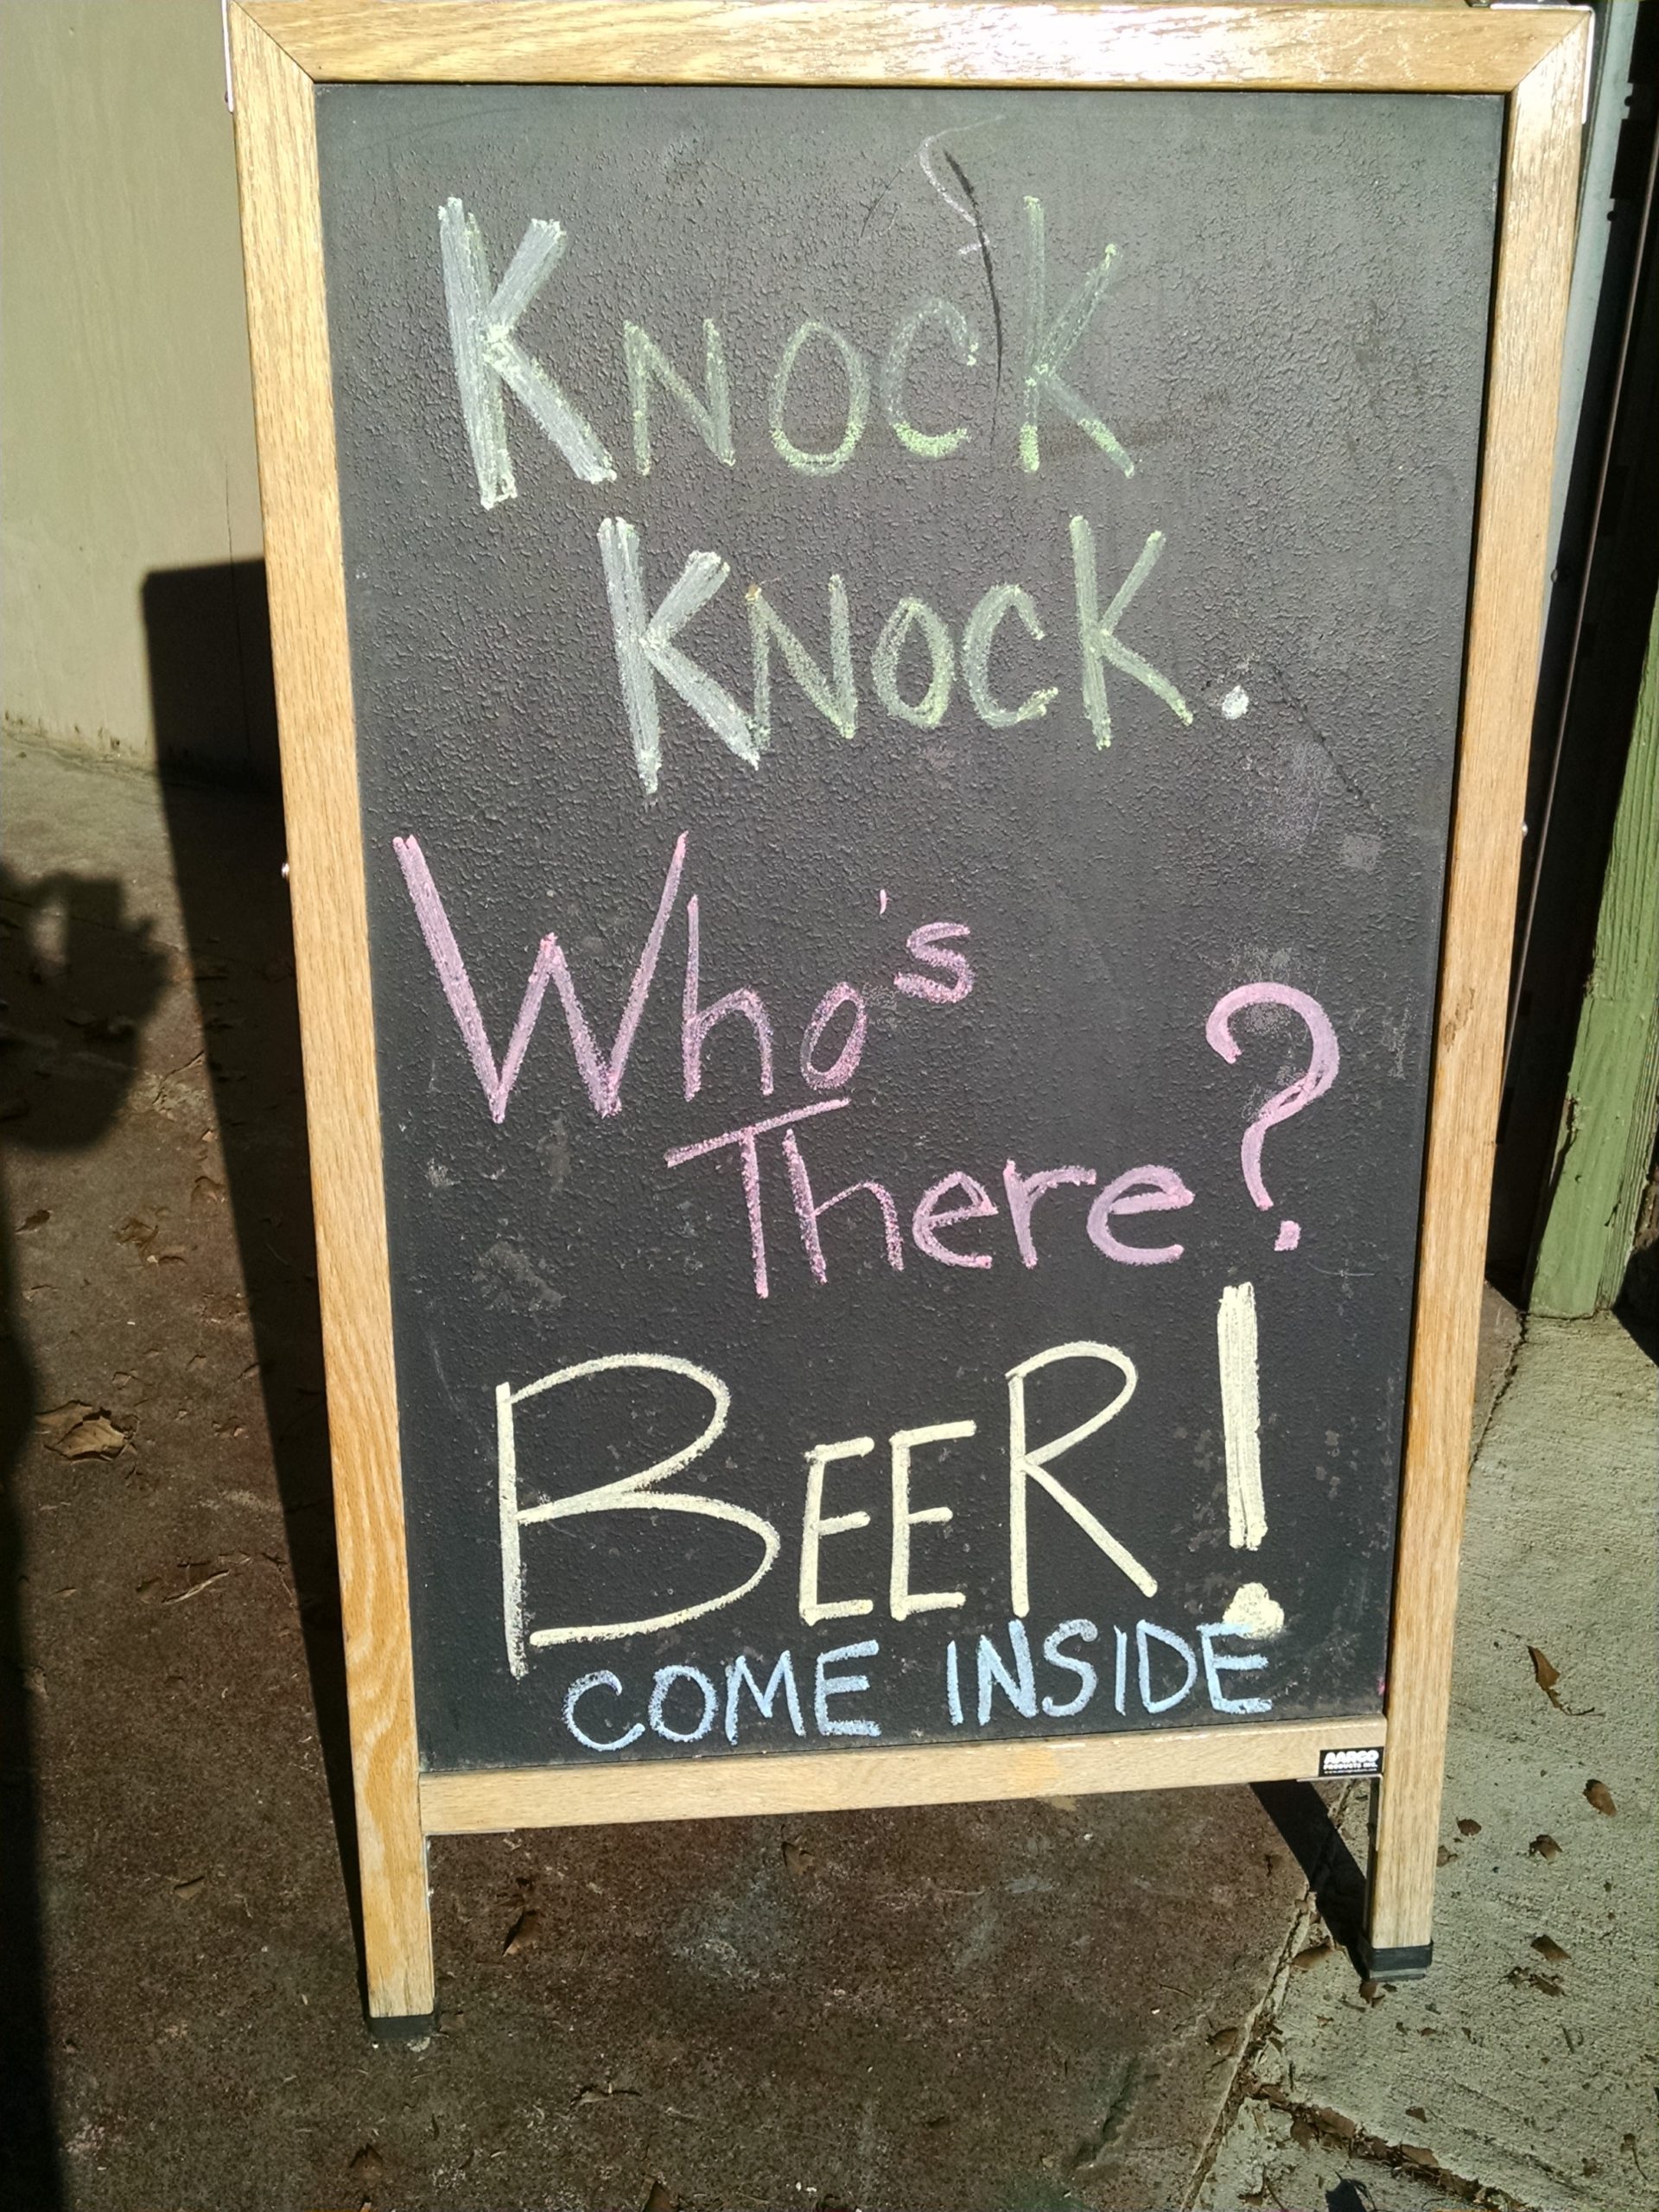 Got beer?